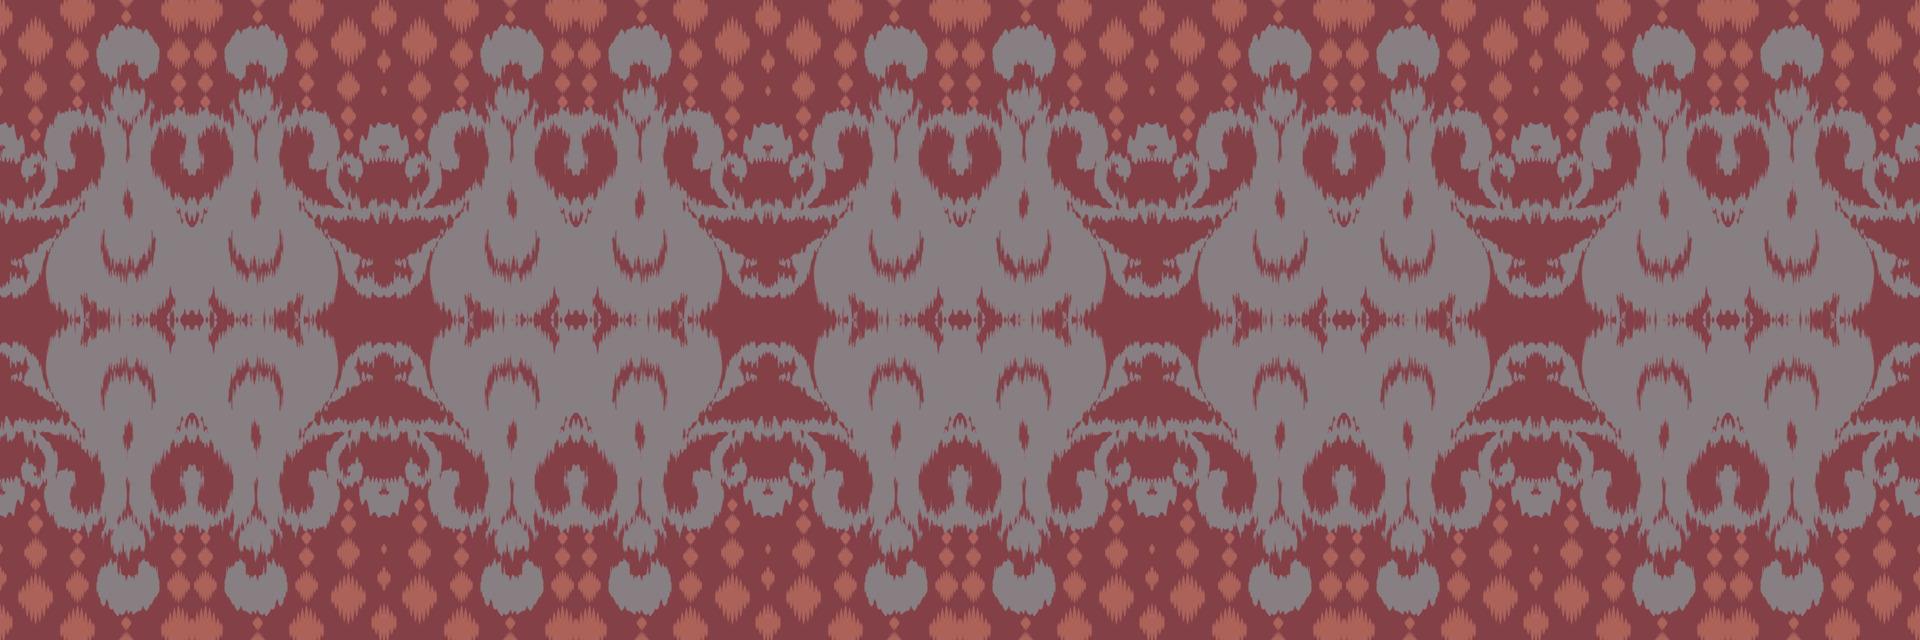 étnico ikat floral batik textil patrón sin costuras diseño vectorial digital para imprimir saree kurti borneo borde de tela símbolos de pincel muestras ropa de fiesta vector